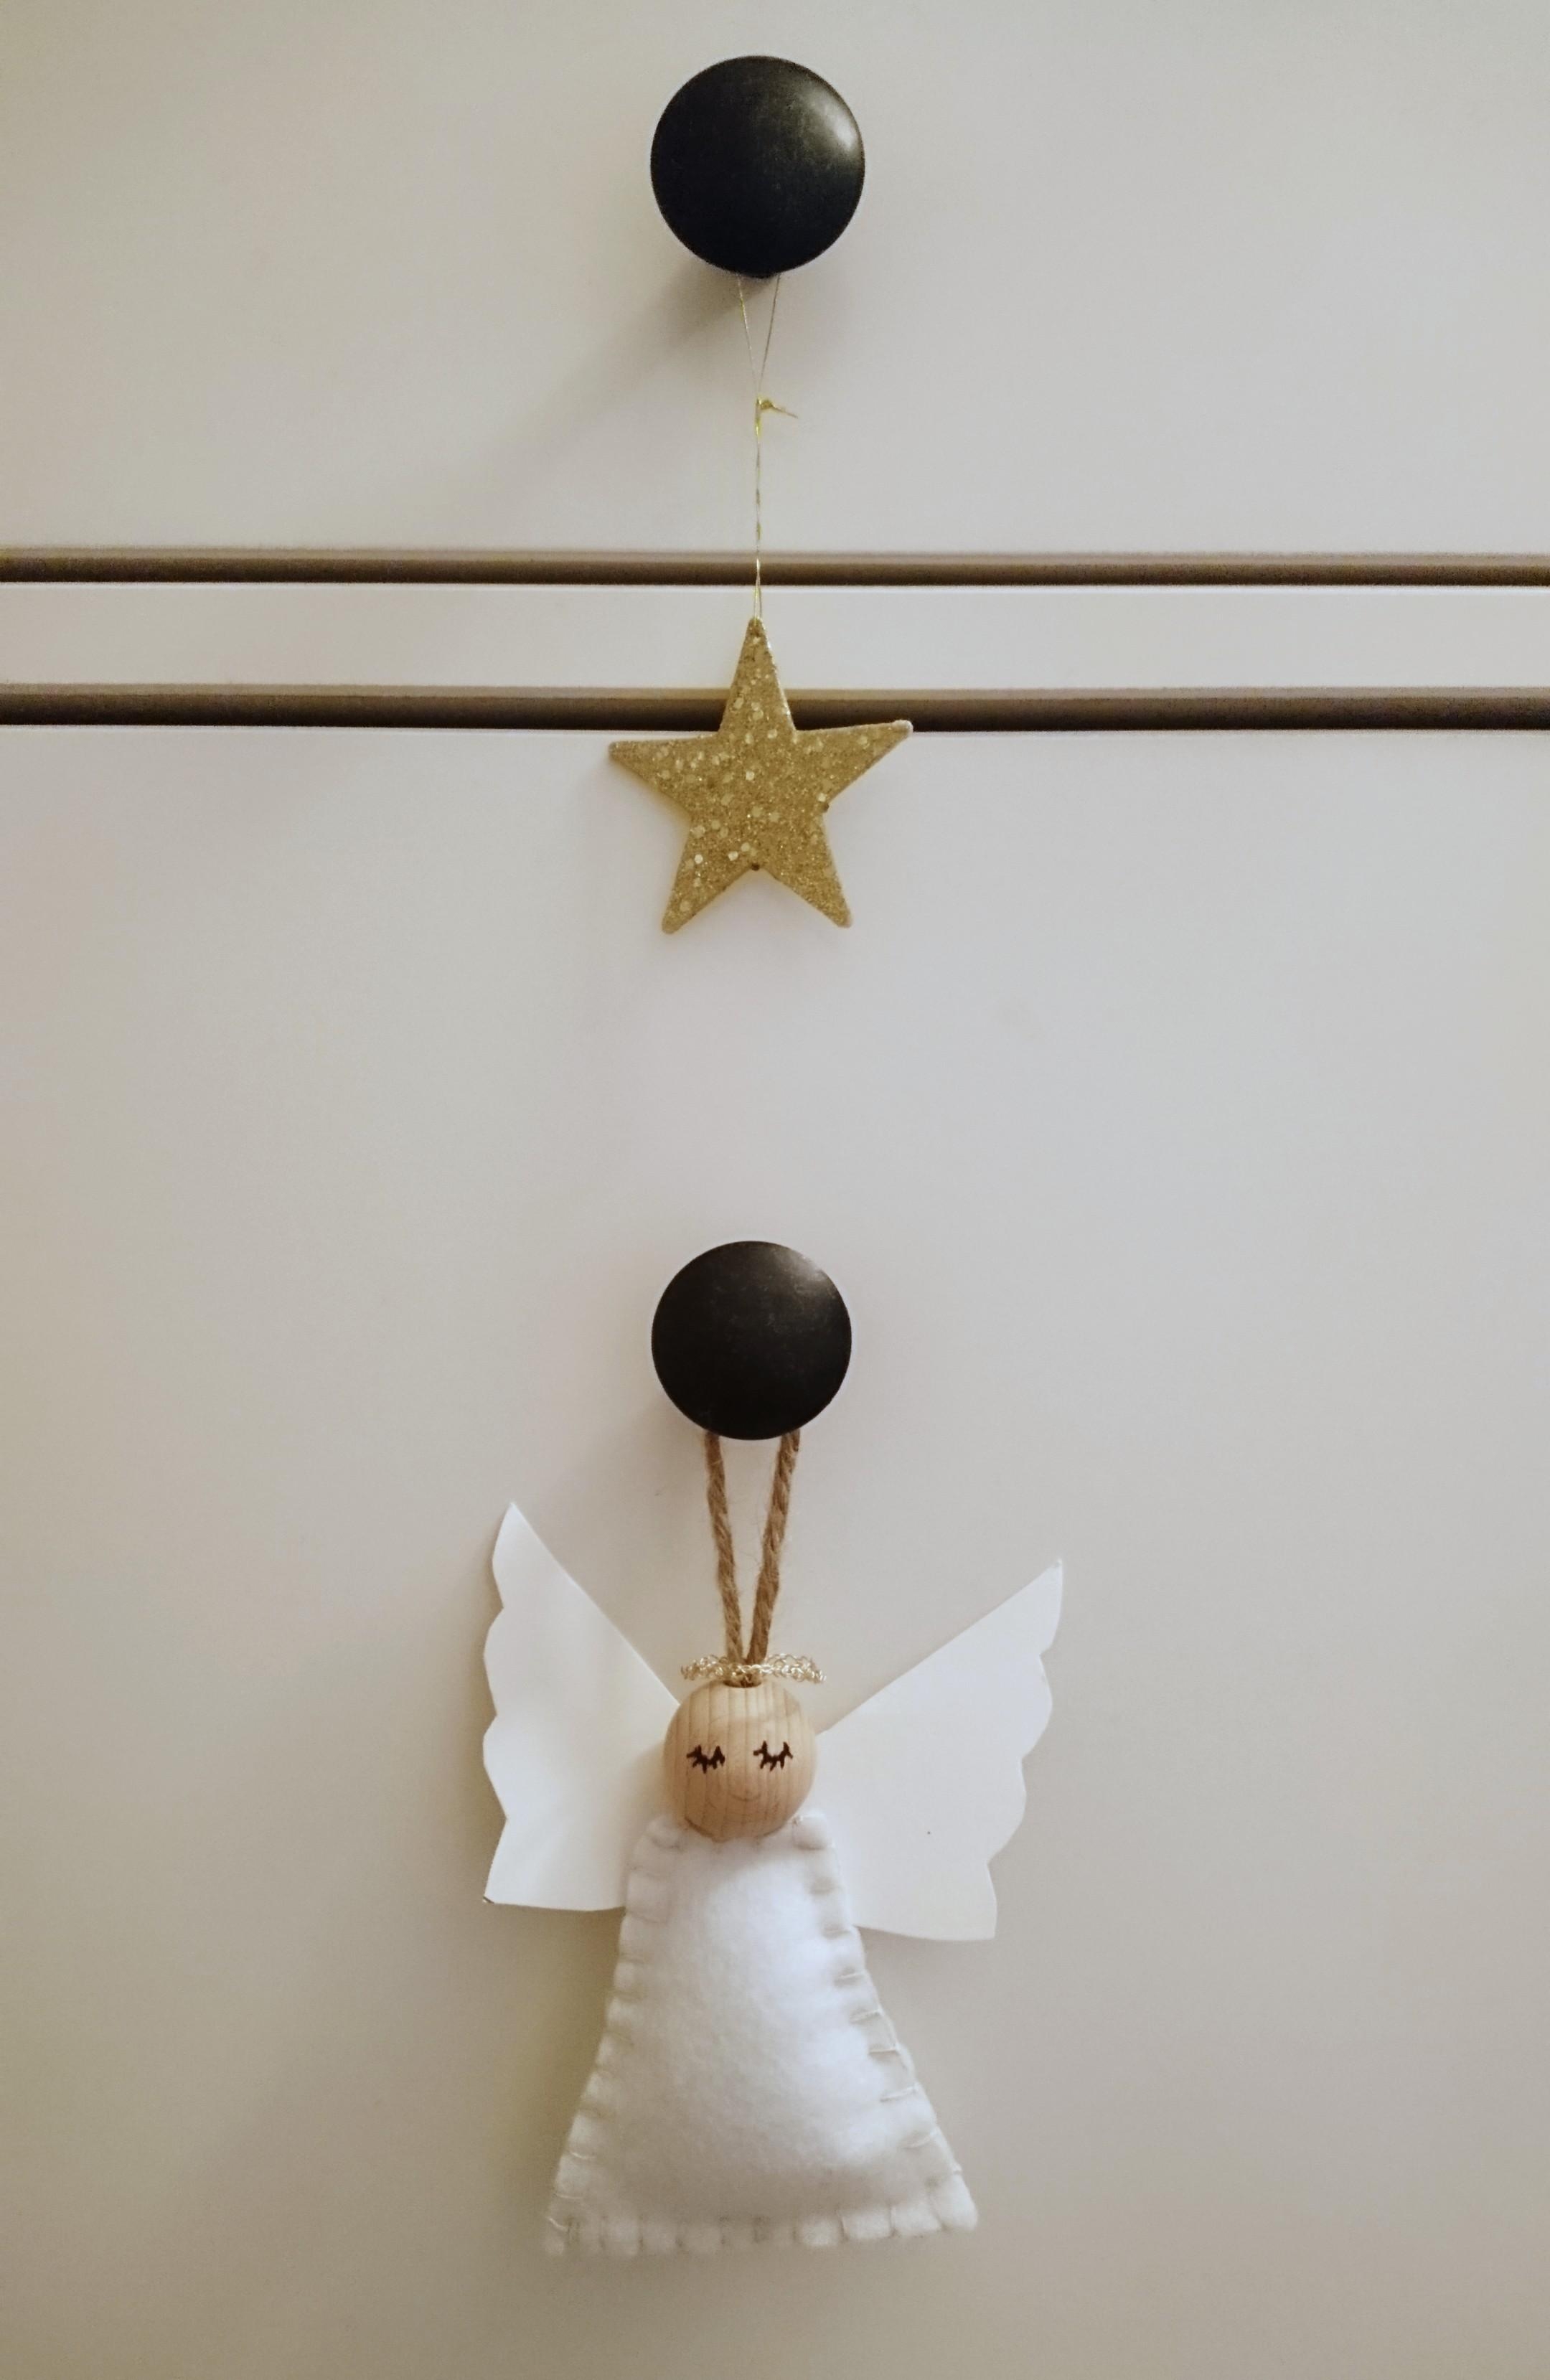 Und es folgen selbstgemachte #engel mit Anleitung von #weihnachtsdeko #home #deko #weihnachten #advent 😇 🌲⭐